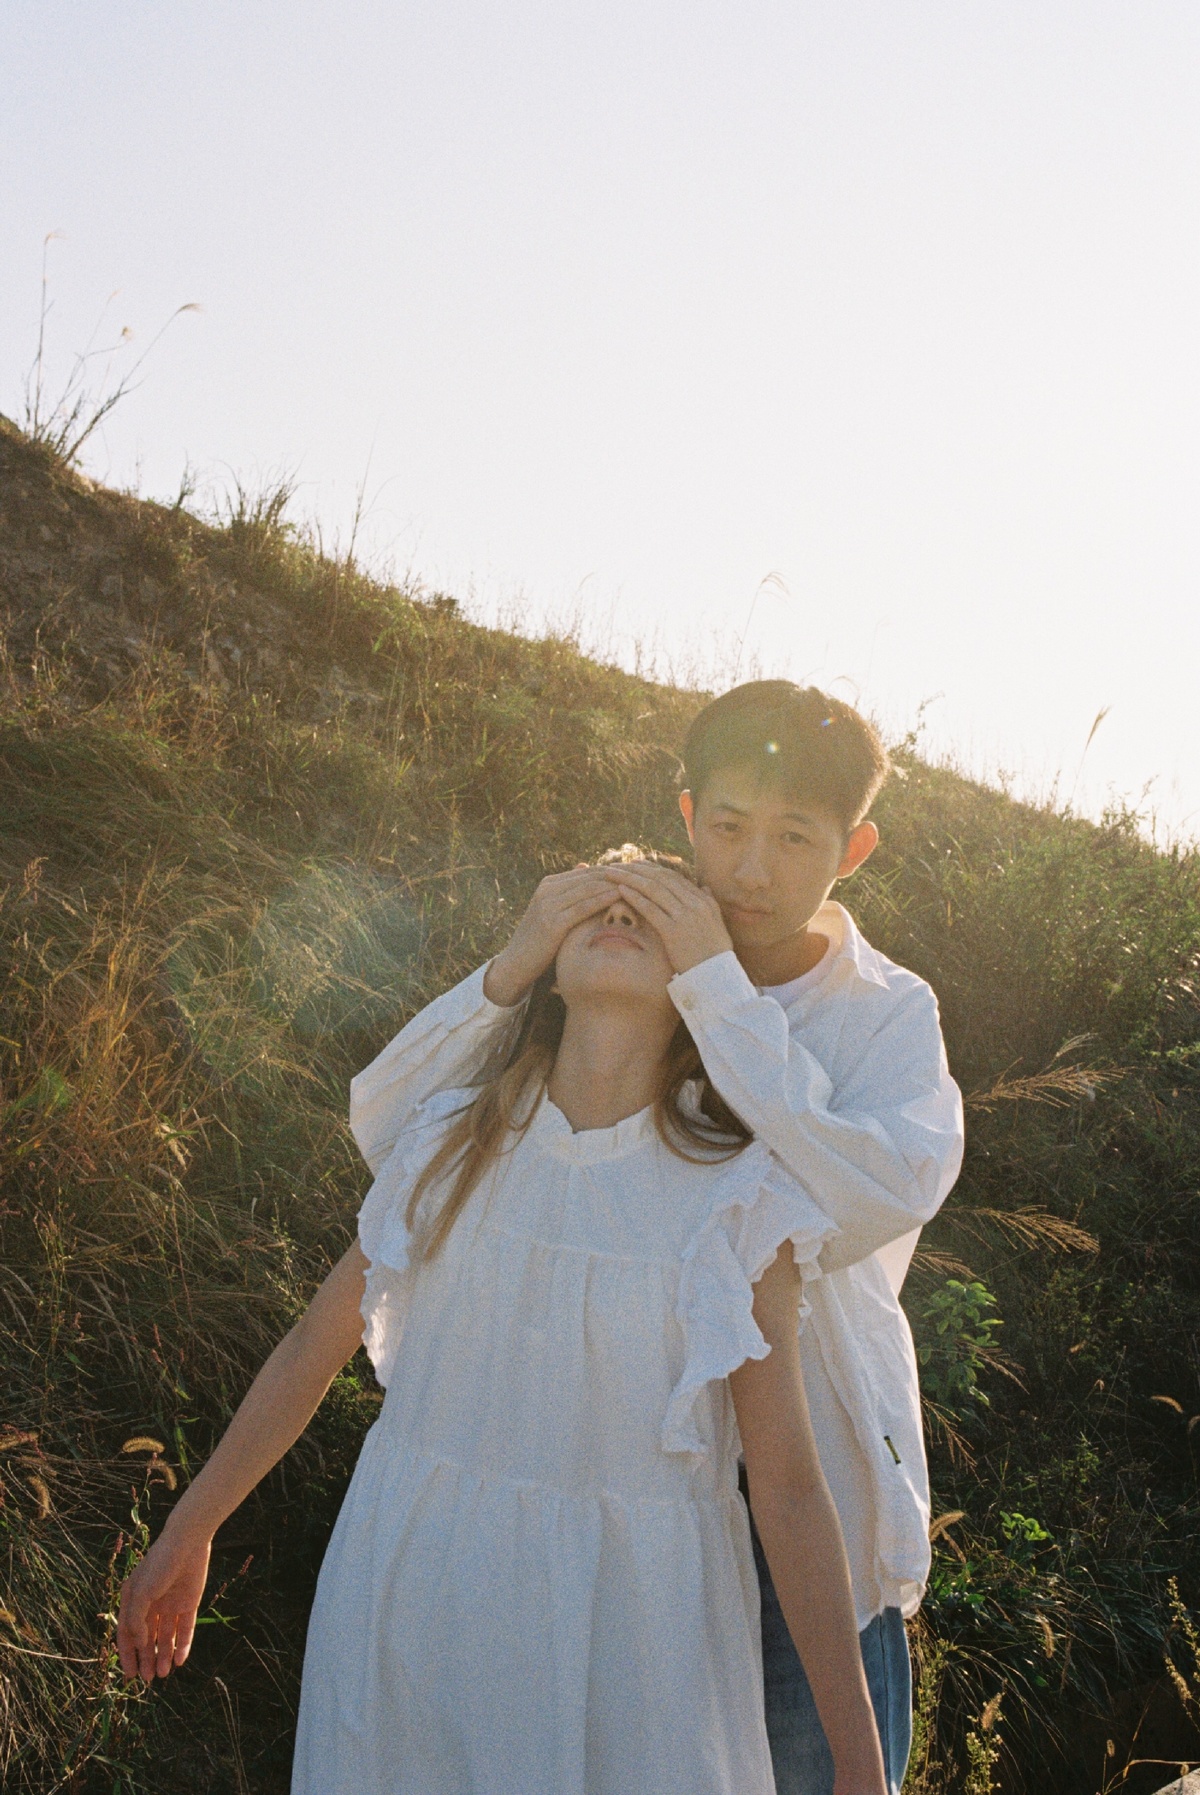 一个穿着白裙子的年轻女孩站在一个田野里 双手捂住眼睛 一个年轻男孩沿着山坡走上来。